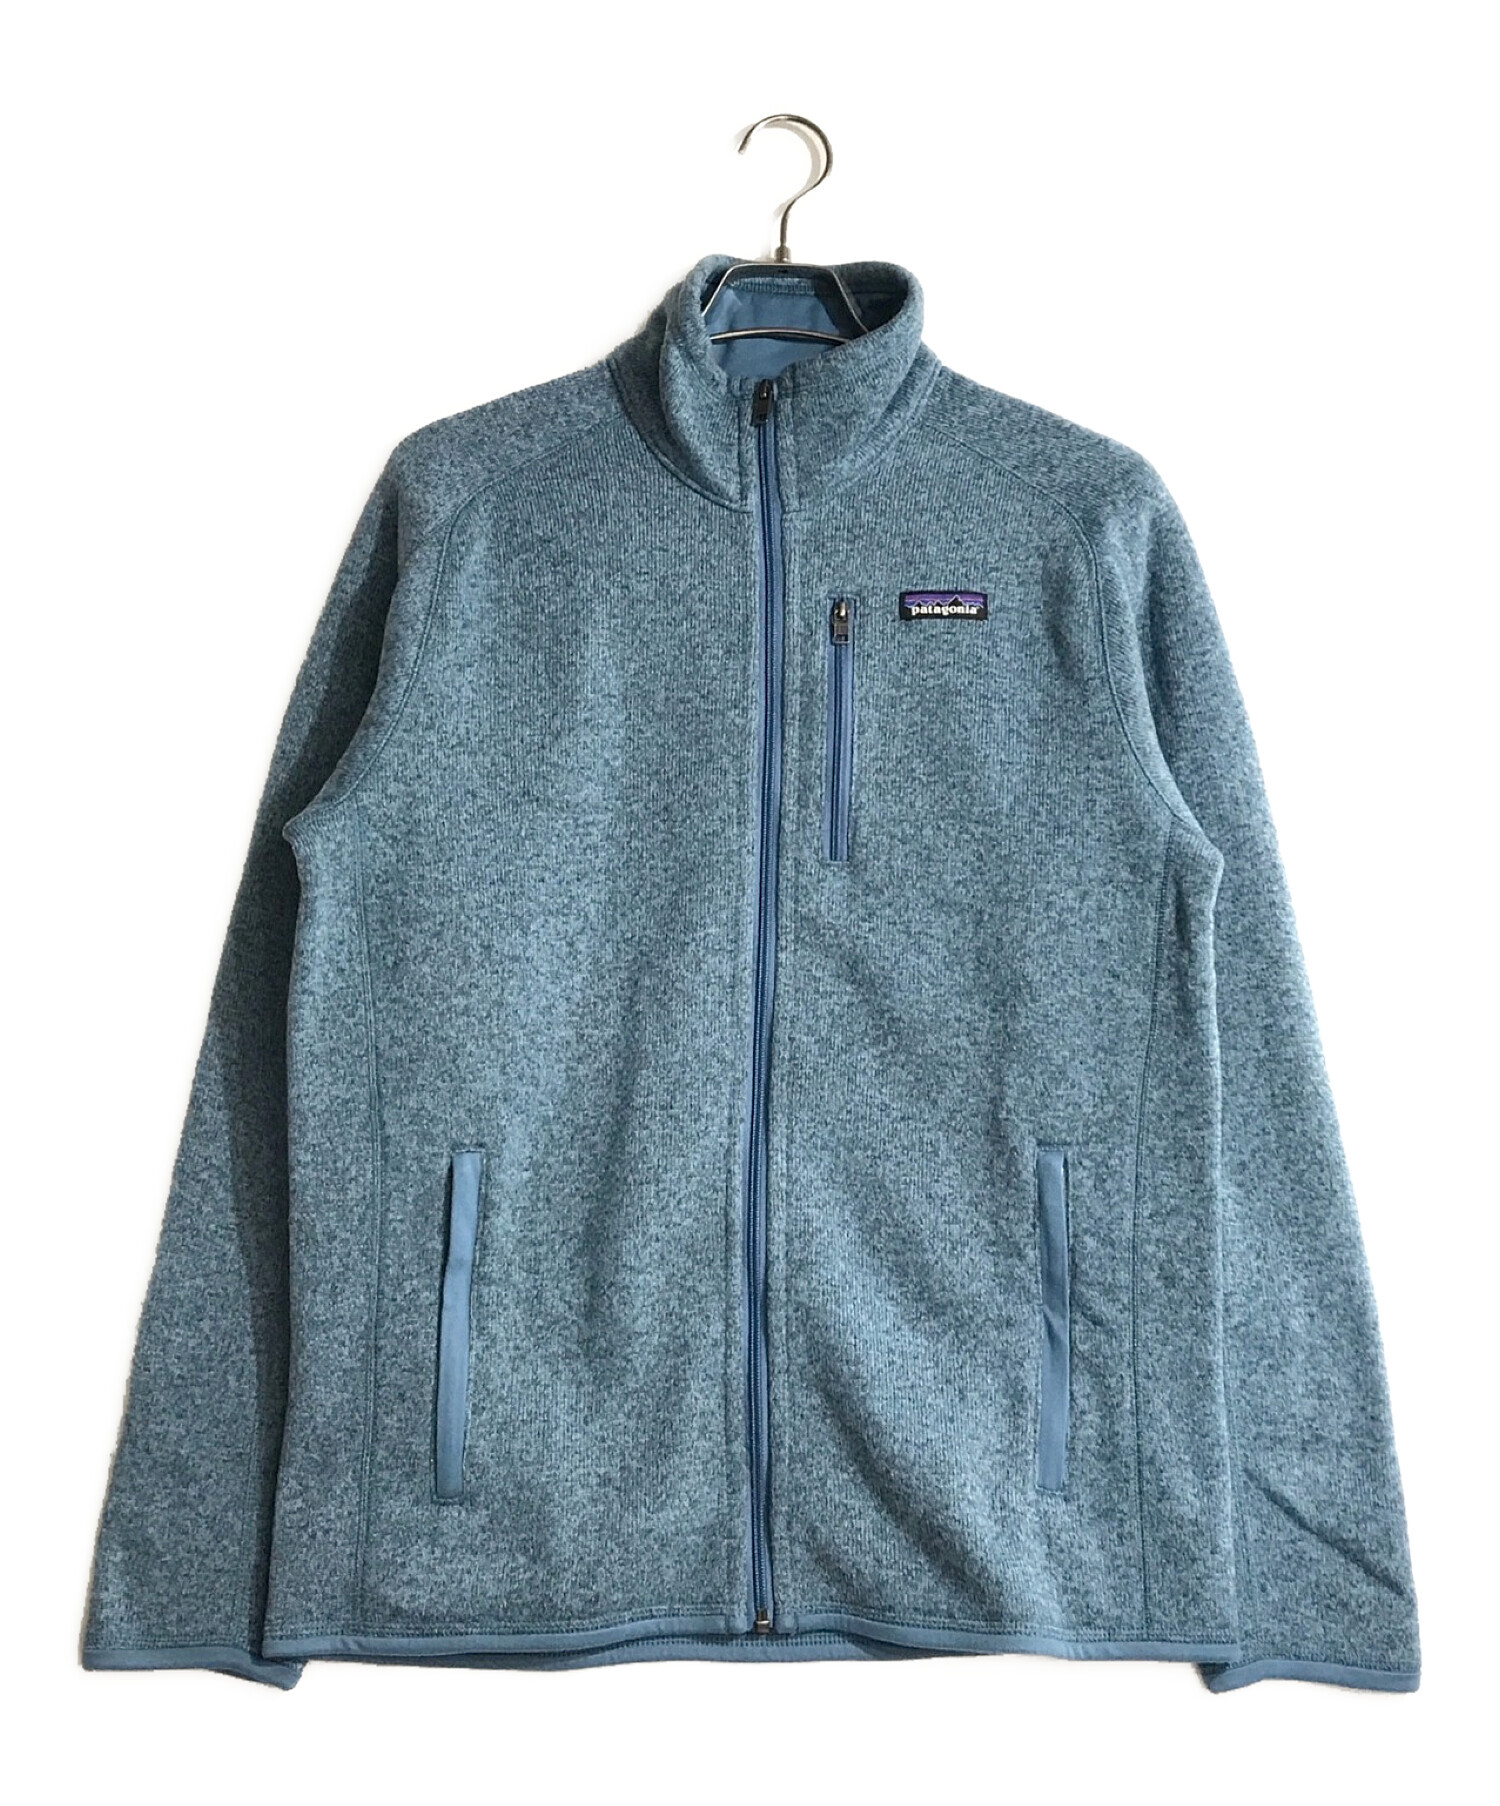 Patagonia (パタゴニア) ベター・セーター・ジャケット ブルー サイズ:M